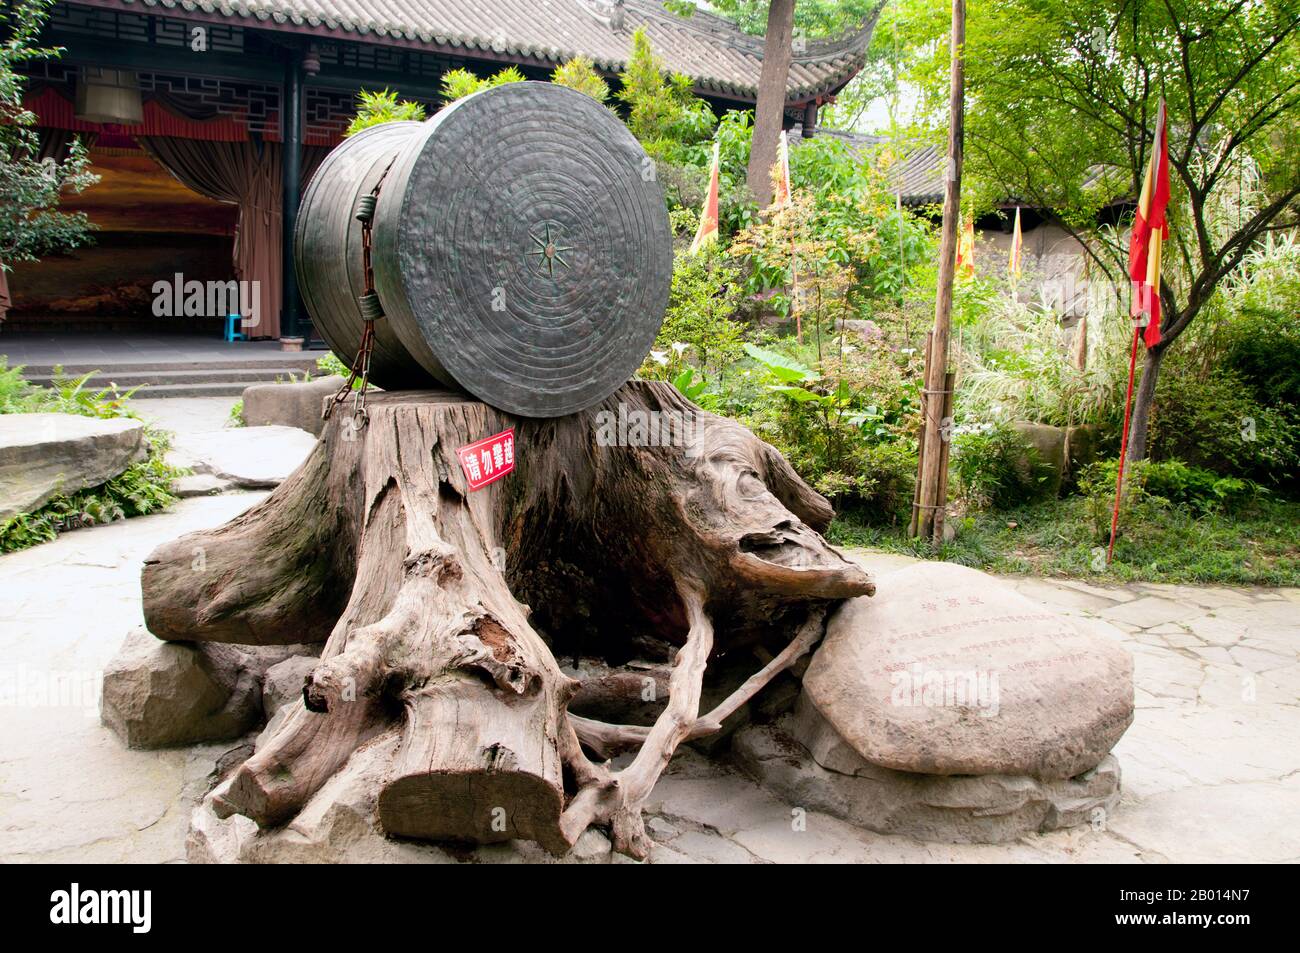 China: Tambor de bronce raro, Wuhou Ci (Wuhou ancestral o Memorial Hall), Chengdu, provincia de Sichuan. Wuhou Ci está dedicado a Zhuge Liang, héroe del clásico 'El Romance de los Tres Reinos' y su emperador, Liu Bei. Zhuge Liang (181–234) fue canciller de Shu Han durante el período de los Tres Reinos de la historia china. A menudo se le reconoce como el estratega más grande y más logrado de su época. Chengdu, conocida anteriormente como Chengtu, es la capital de la provincia de Sichuan en el suroeste de China. Foto de stock